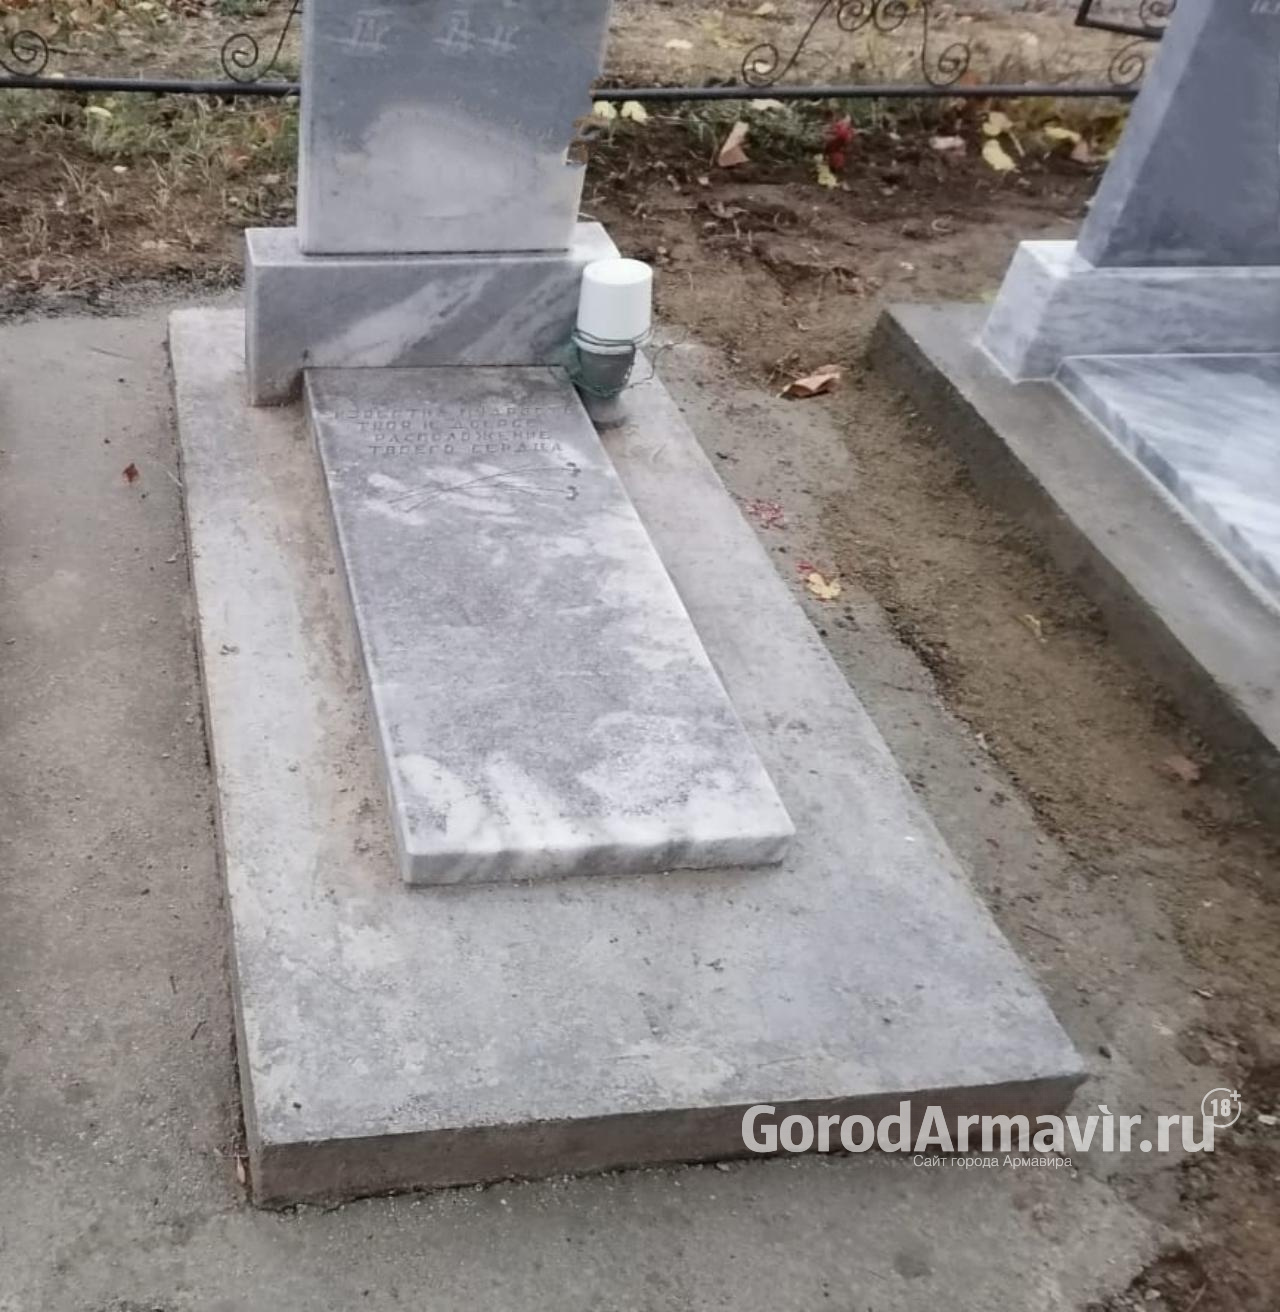 В Армавире умерла горожанка 85 лет с подтвержденным коронавирусом 